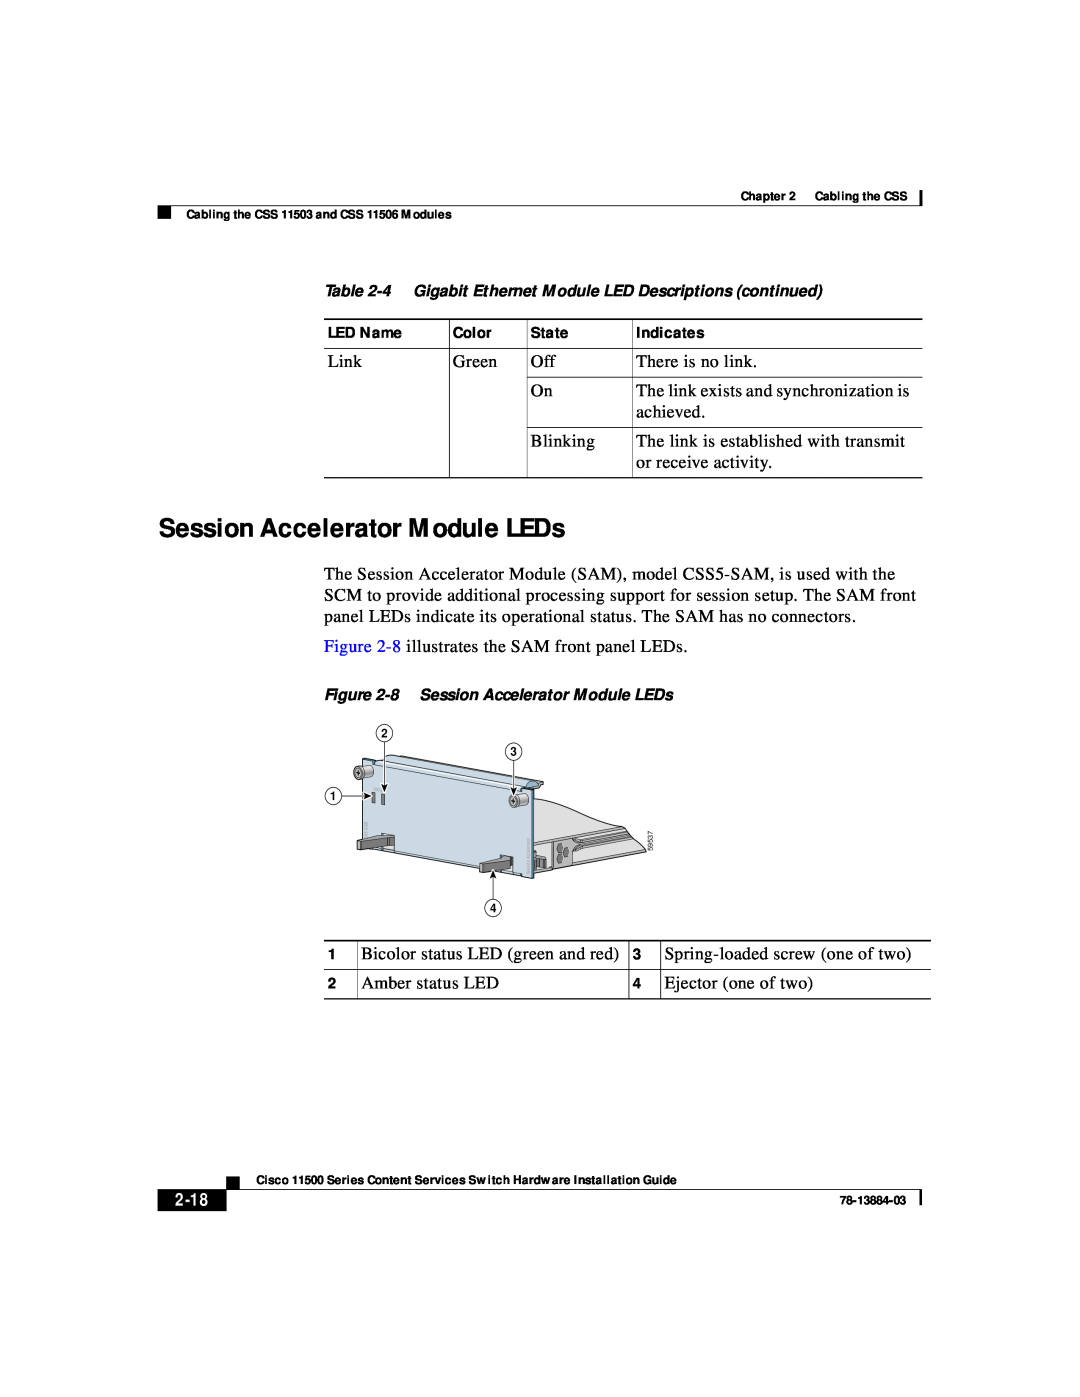 Cisco Systems 11500 Series Session Accelerator Module LEDs, 2-18, 4 Gigabit Ethernet Module LED Descriptions continued 